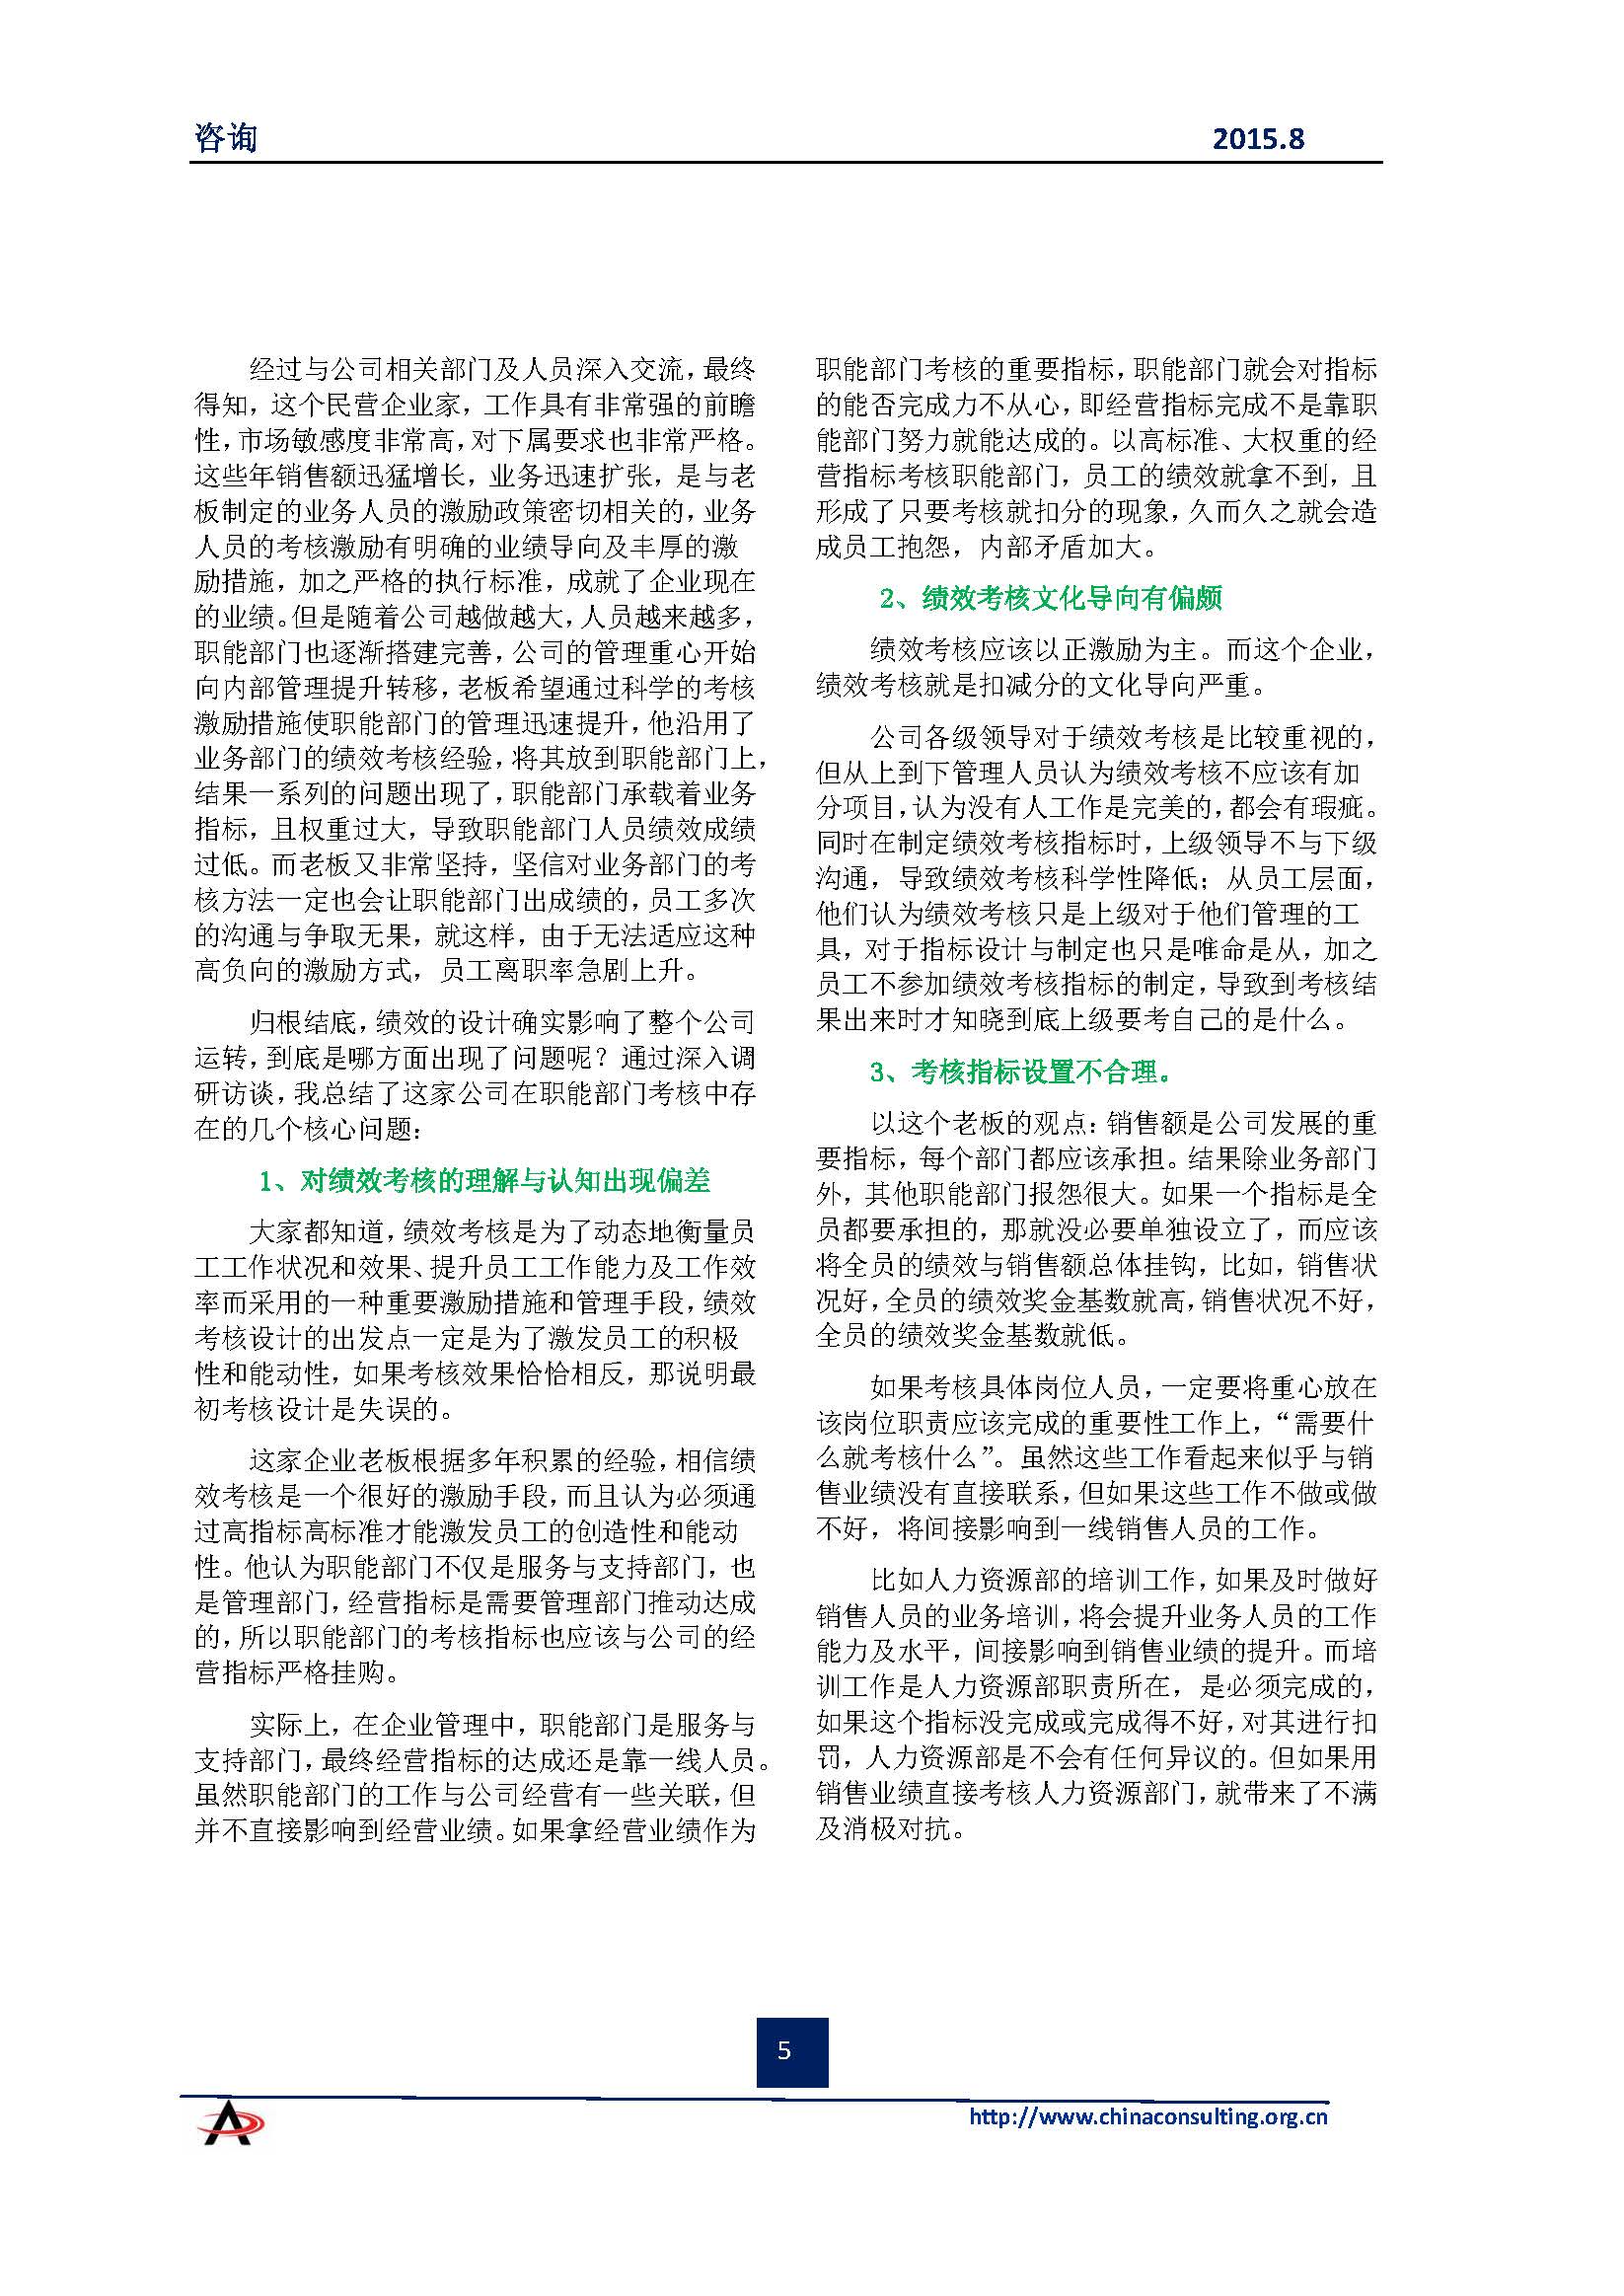 中国科技咨询协会会刊（第四十期）初稿_页面_07.jpg